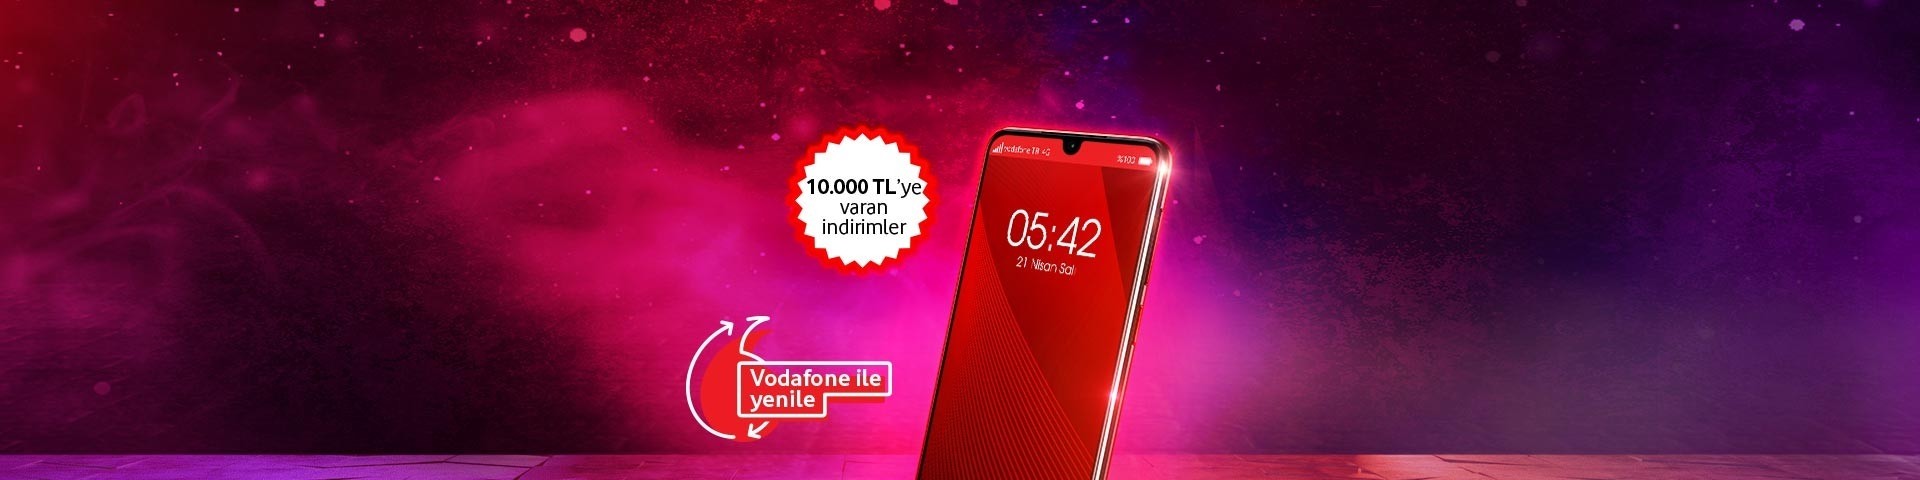 Vodafone ile Yenile